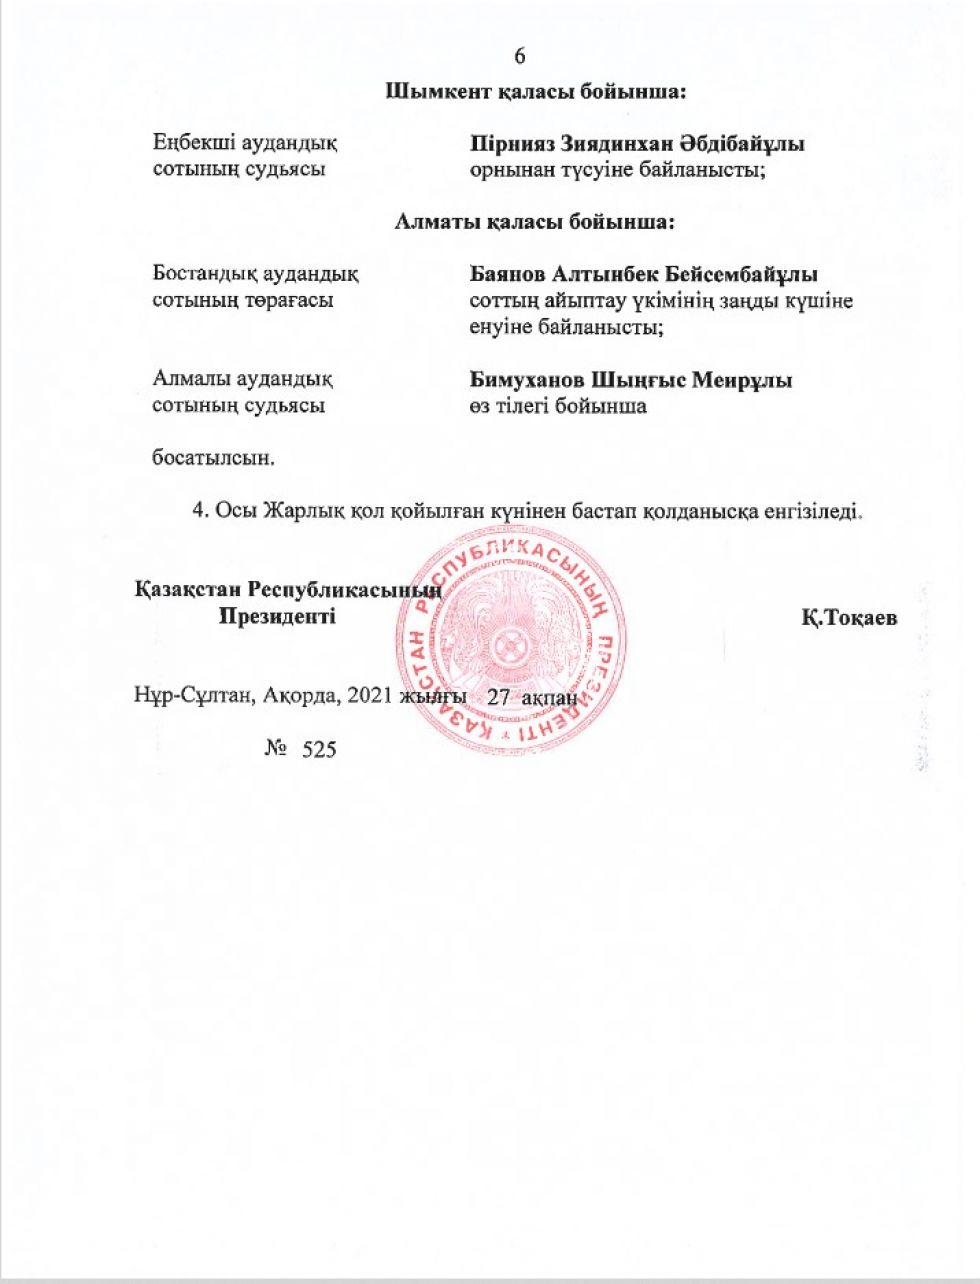 Указ президента о назначении судей апрель